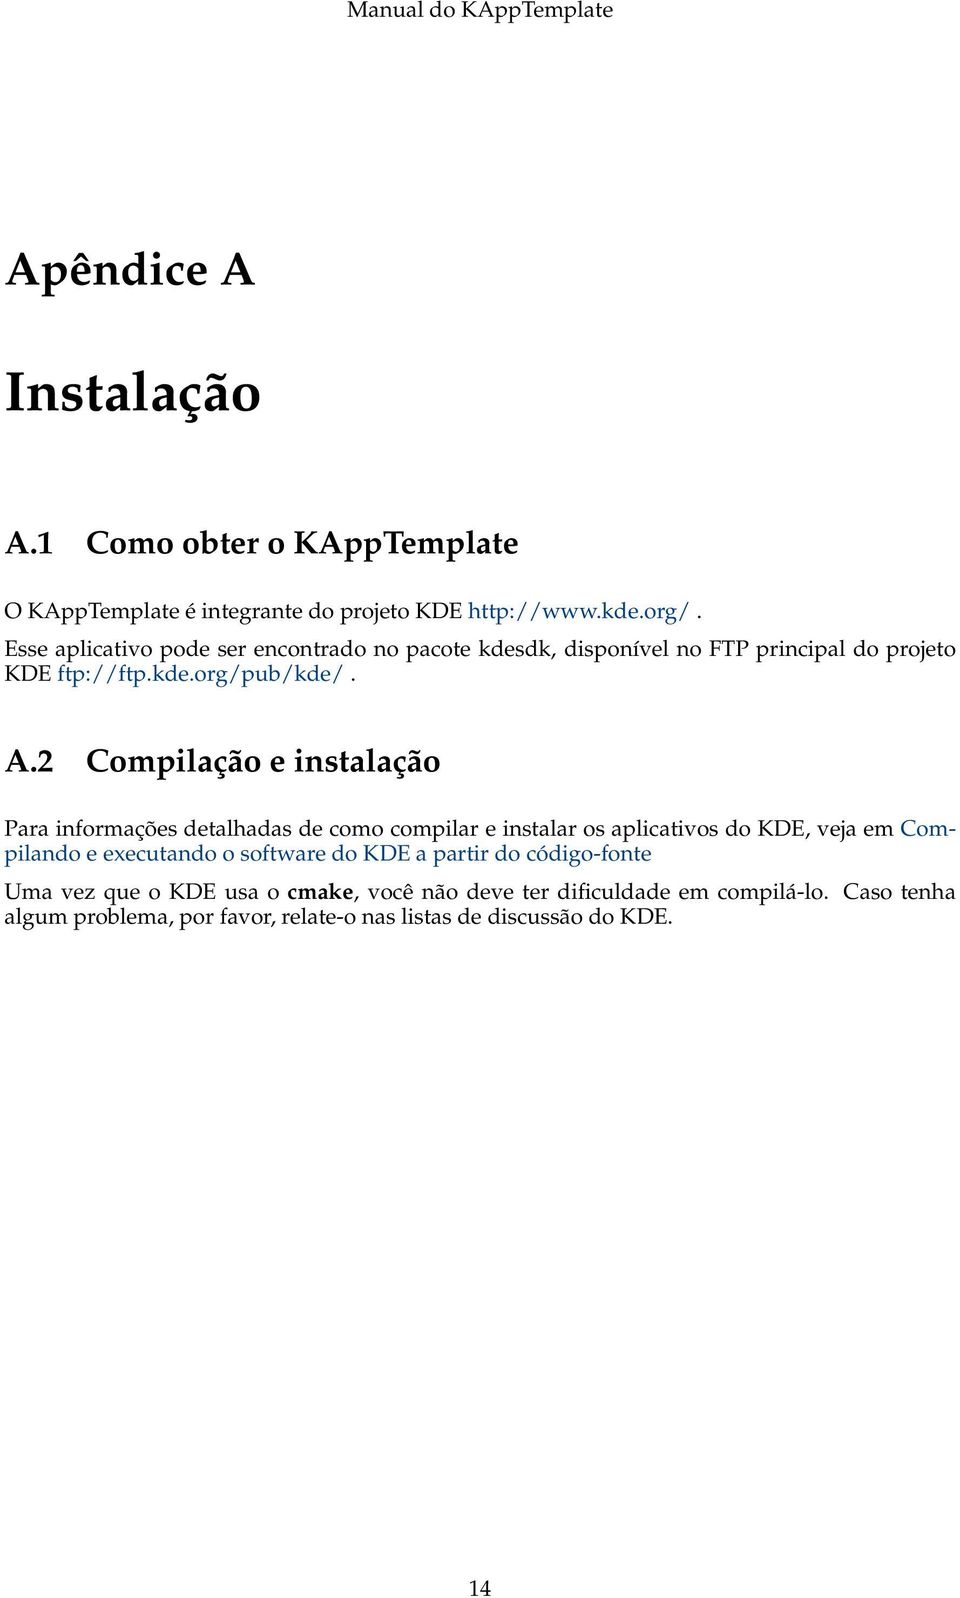 2 Compilação e instalação Para informações detalhadas de como compilar e instalar os aplicativos do KDE, veja em Compilando e executando o